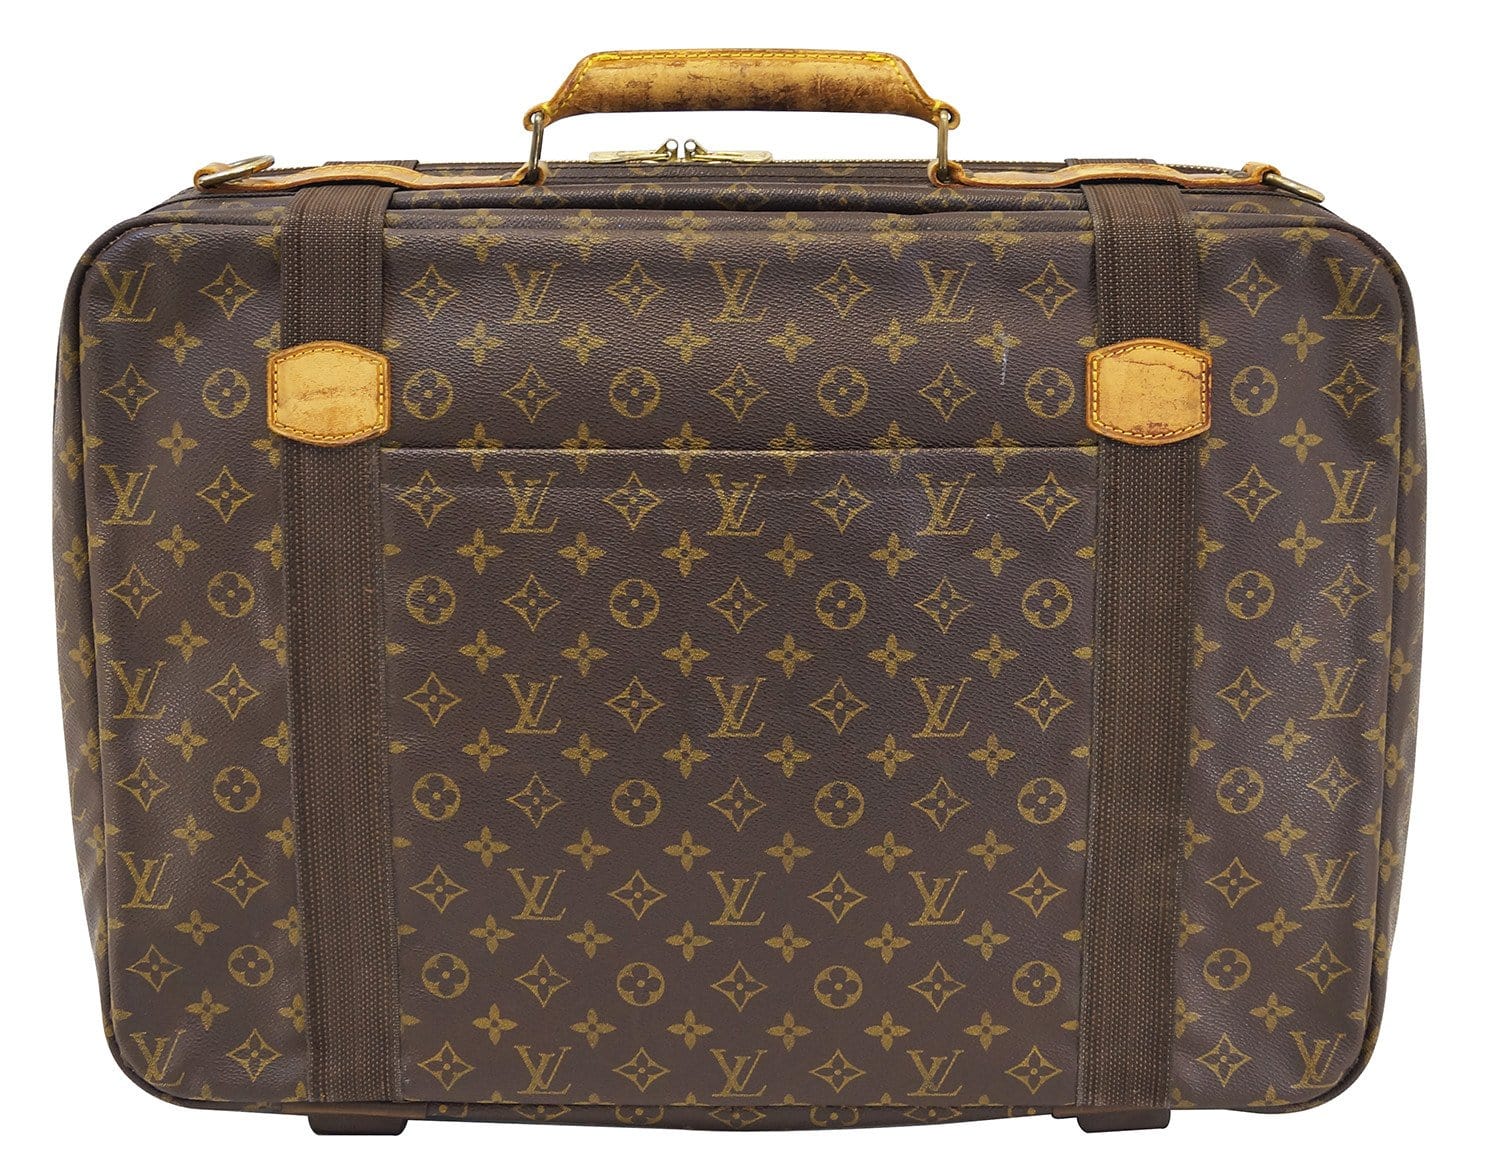 Louis Vuitton large travel luggage Bag